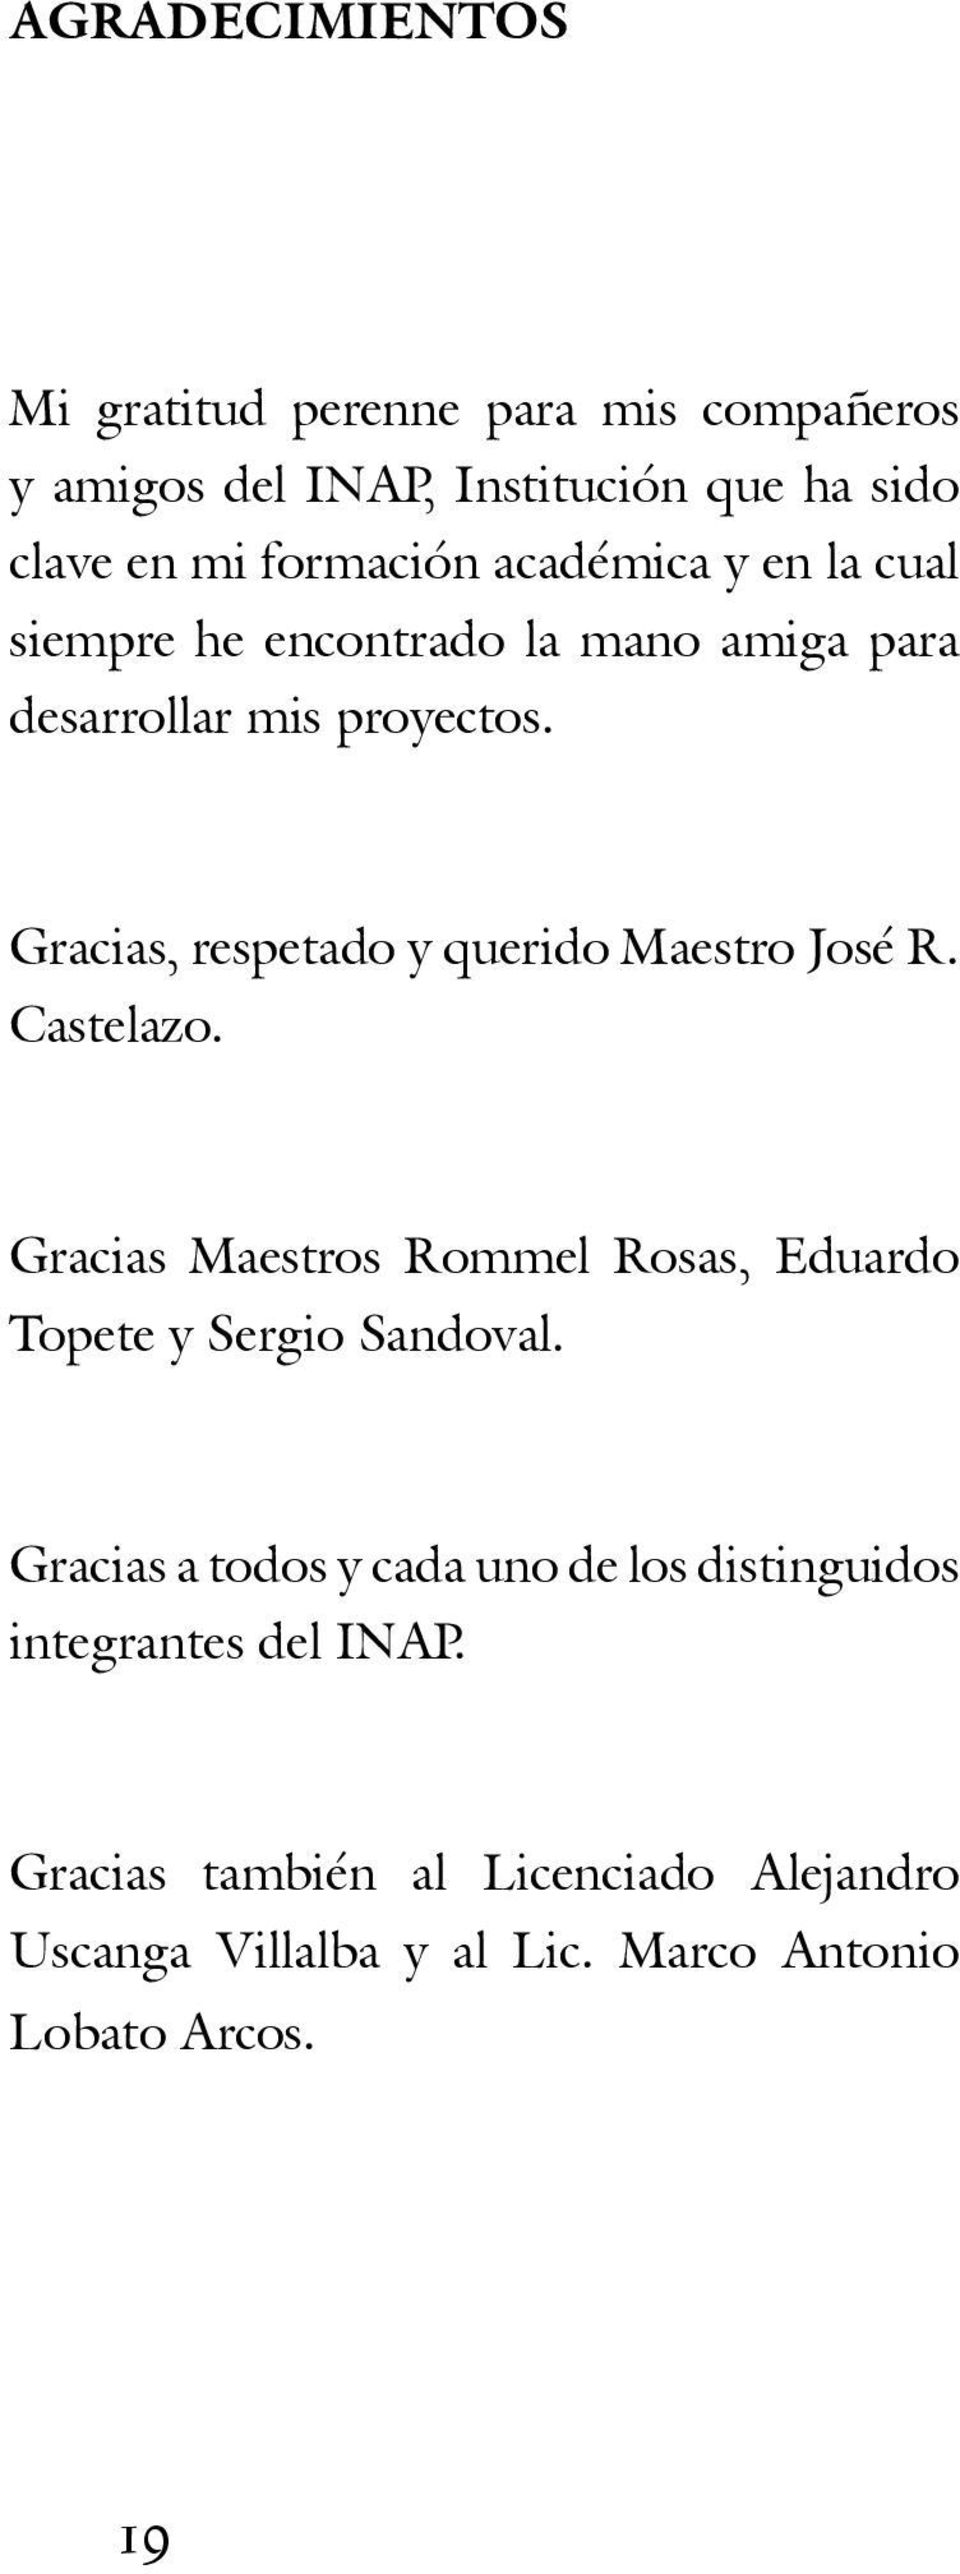 Gracias, respetado y querido Maestro José R. Castelazo. Gracias Maestros Rommel Rosas, Eduardo Topete y Sergio Sandoval.